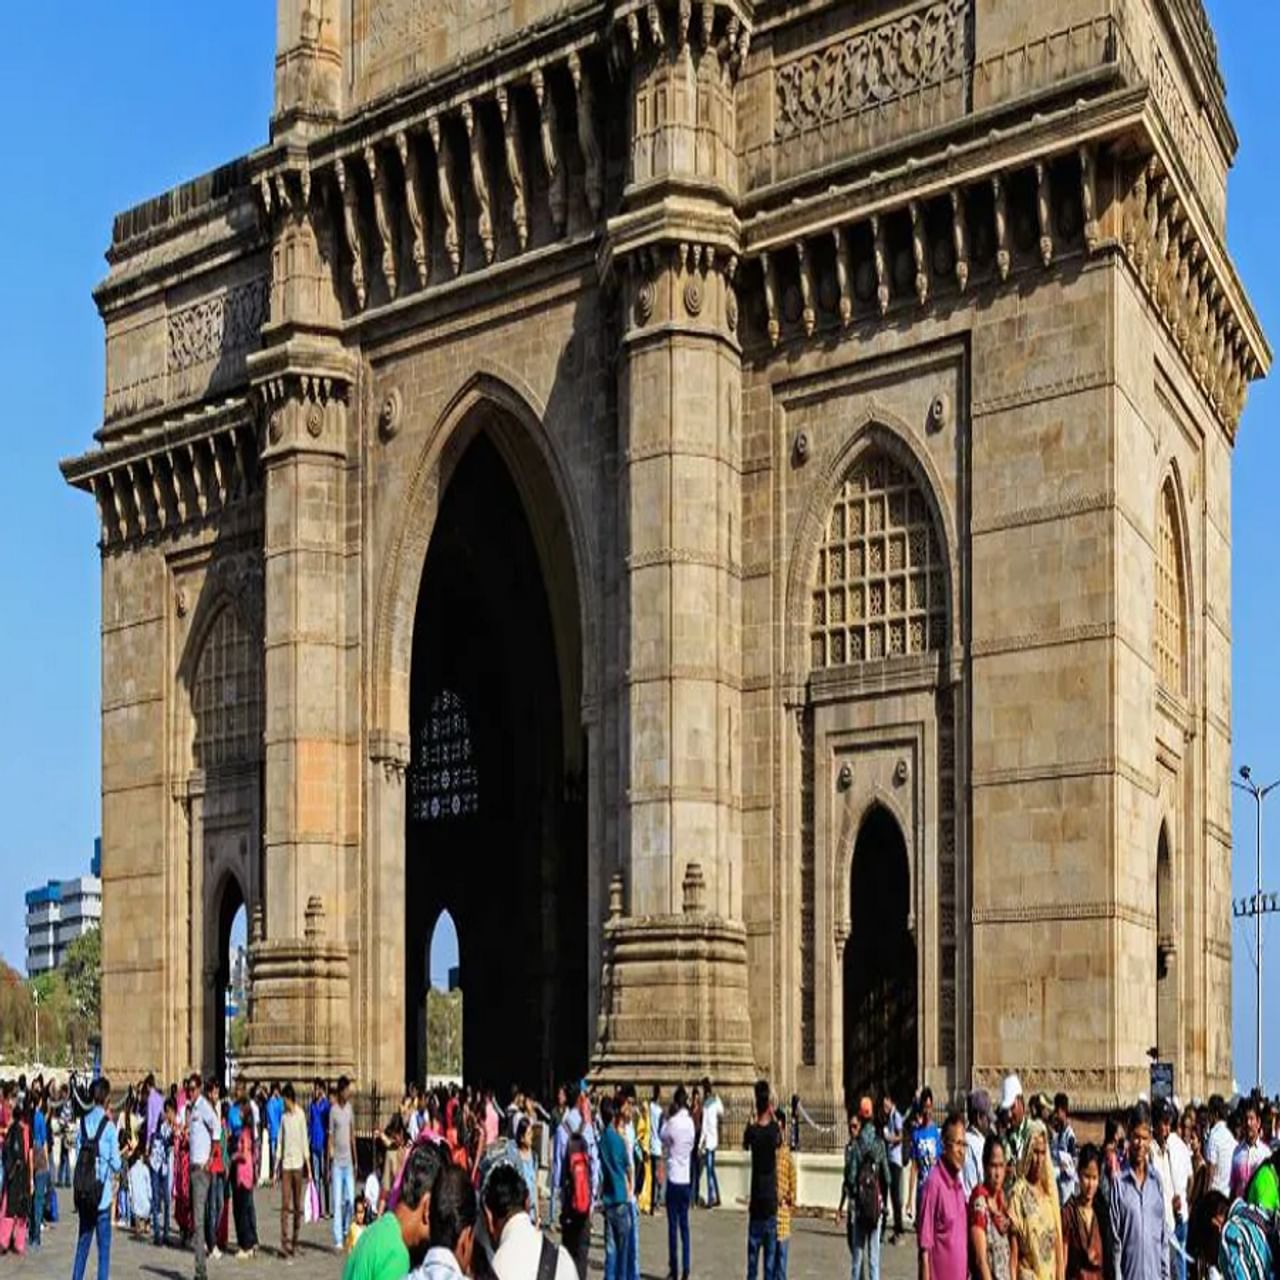 गेटवे ऑफ इंडिया: किंग जॉर्ज पंचम आणि क्वीन मेरी हे भारतामध्ये आल्यावर गेटवे ऑफ इंडियाची बांधले गेले असल्याचे सांगितले जाते. ही इमारत मुंबईतील सर्वोत्तम पर्यटन स्थळ म्हणून प्रसिध्द आहे. 